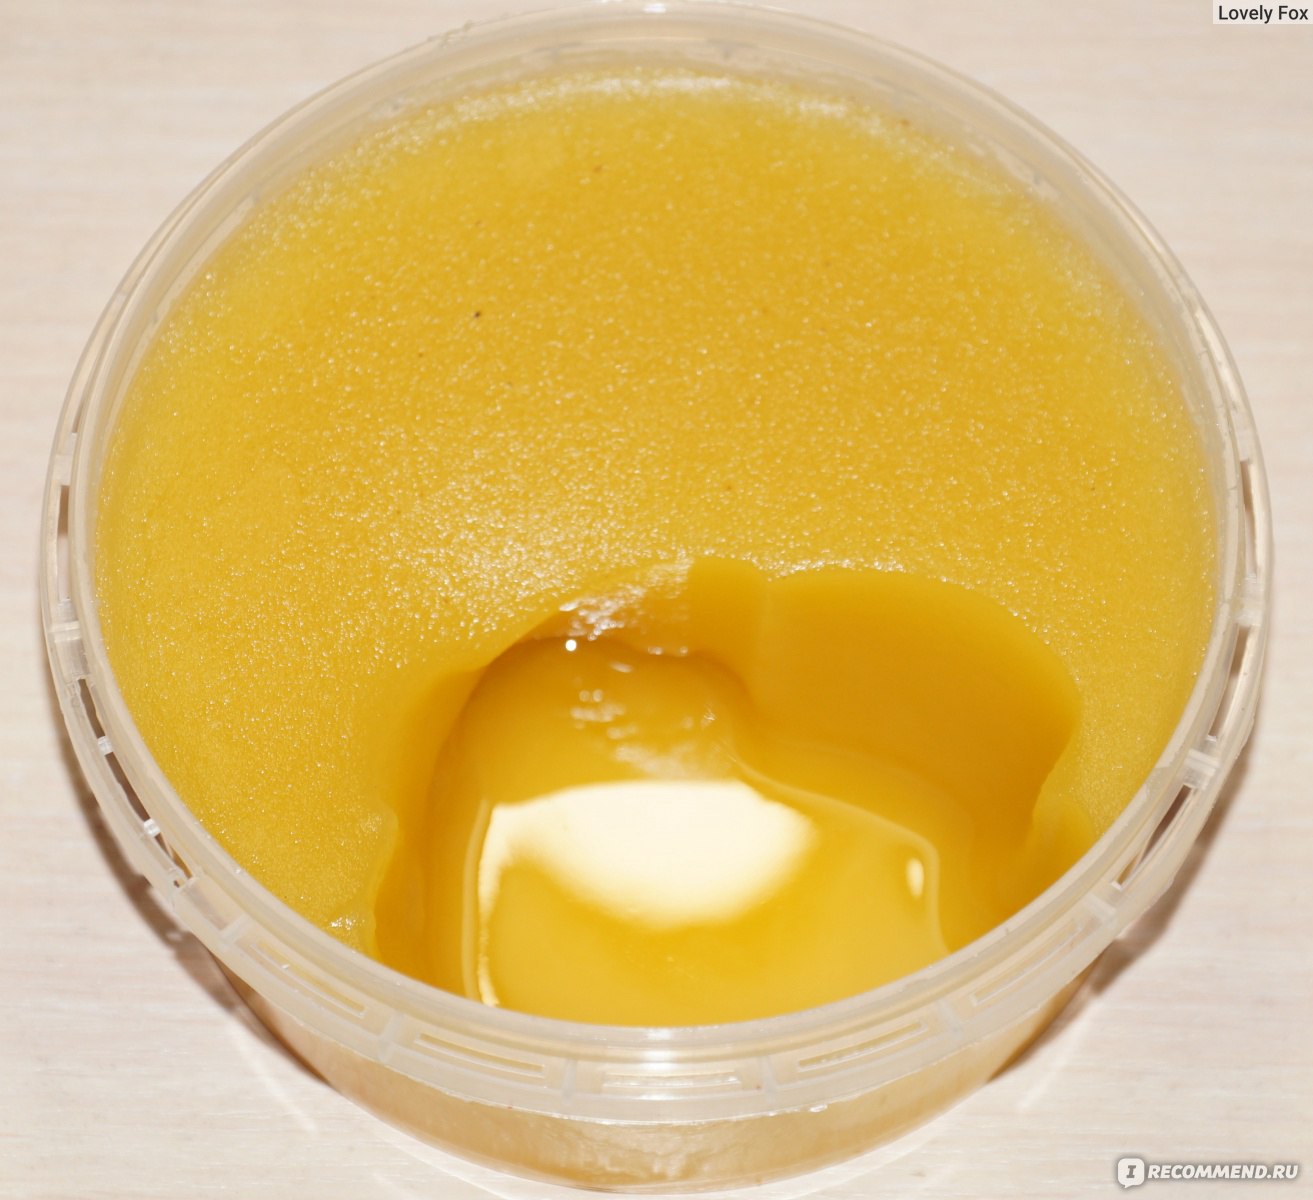 Проверить мед в домашних условиях водой